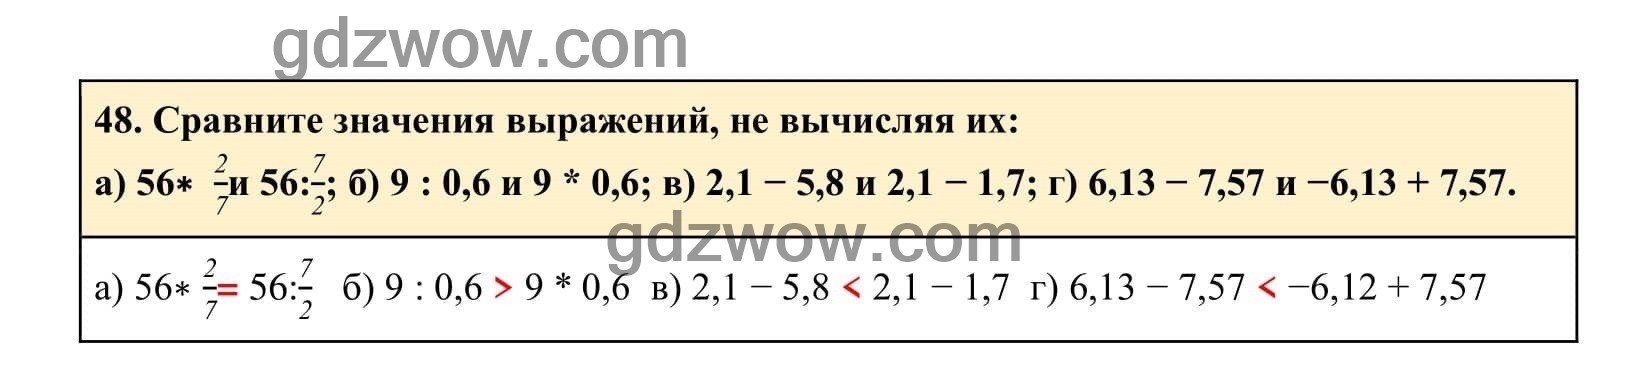 Упражнение 48 - ГДЗ по Алгебре 7 класс Учебник Макарычев (решебник) - GDZwow